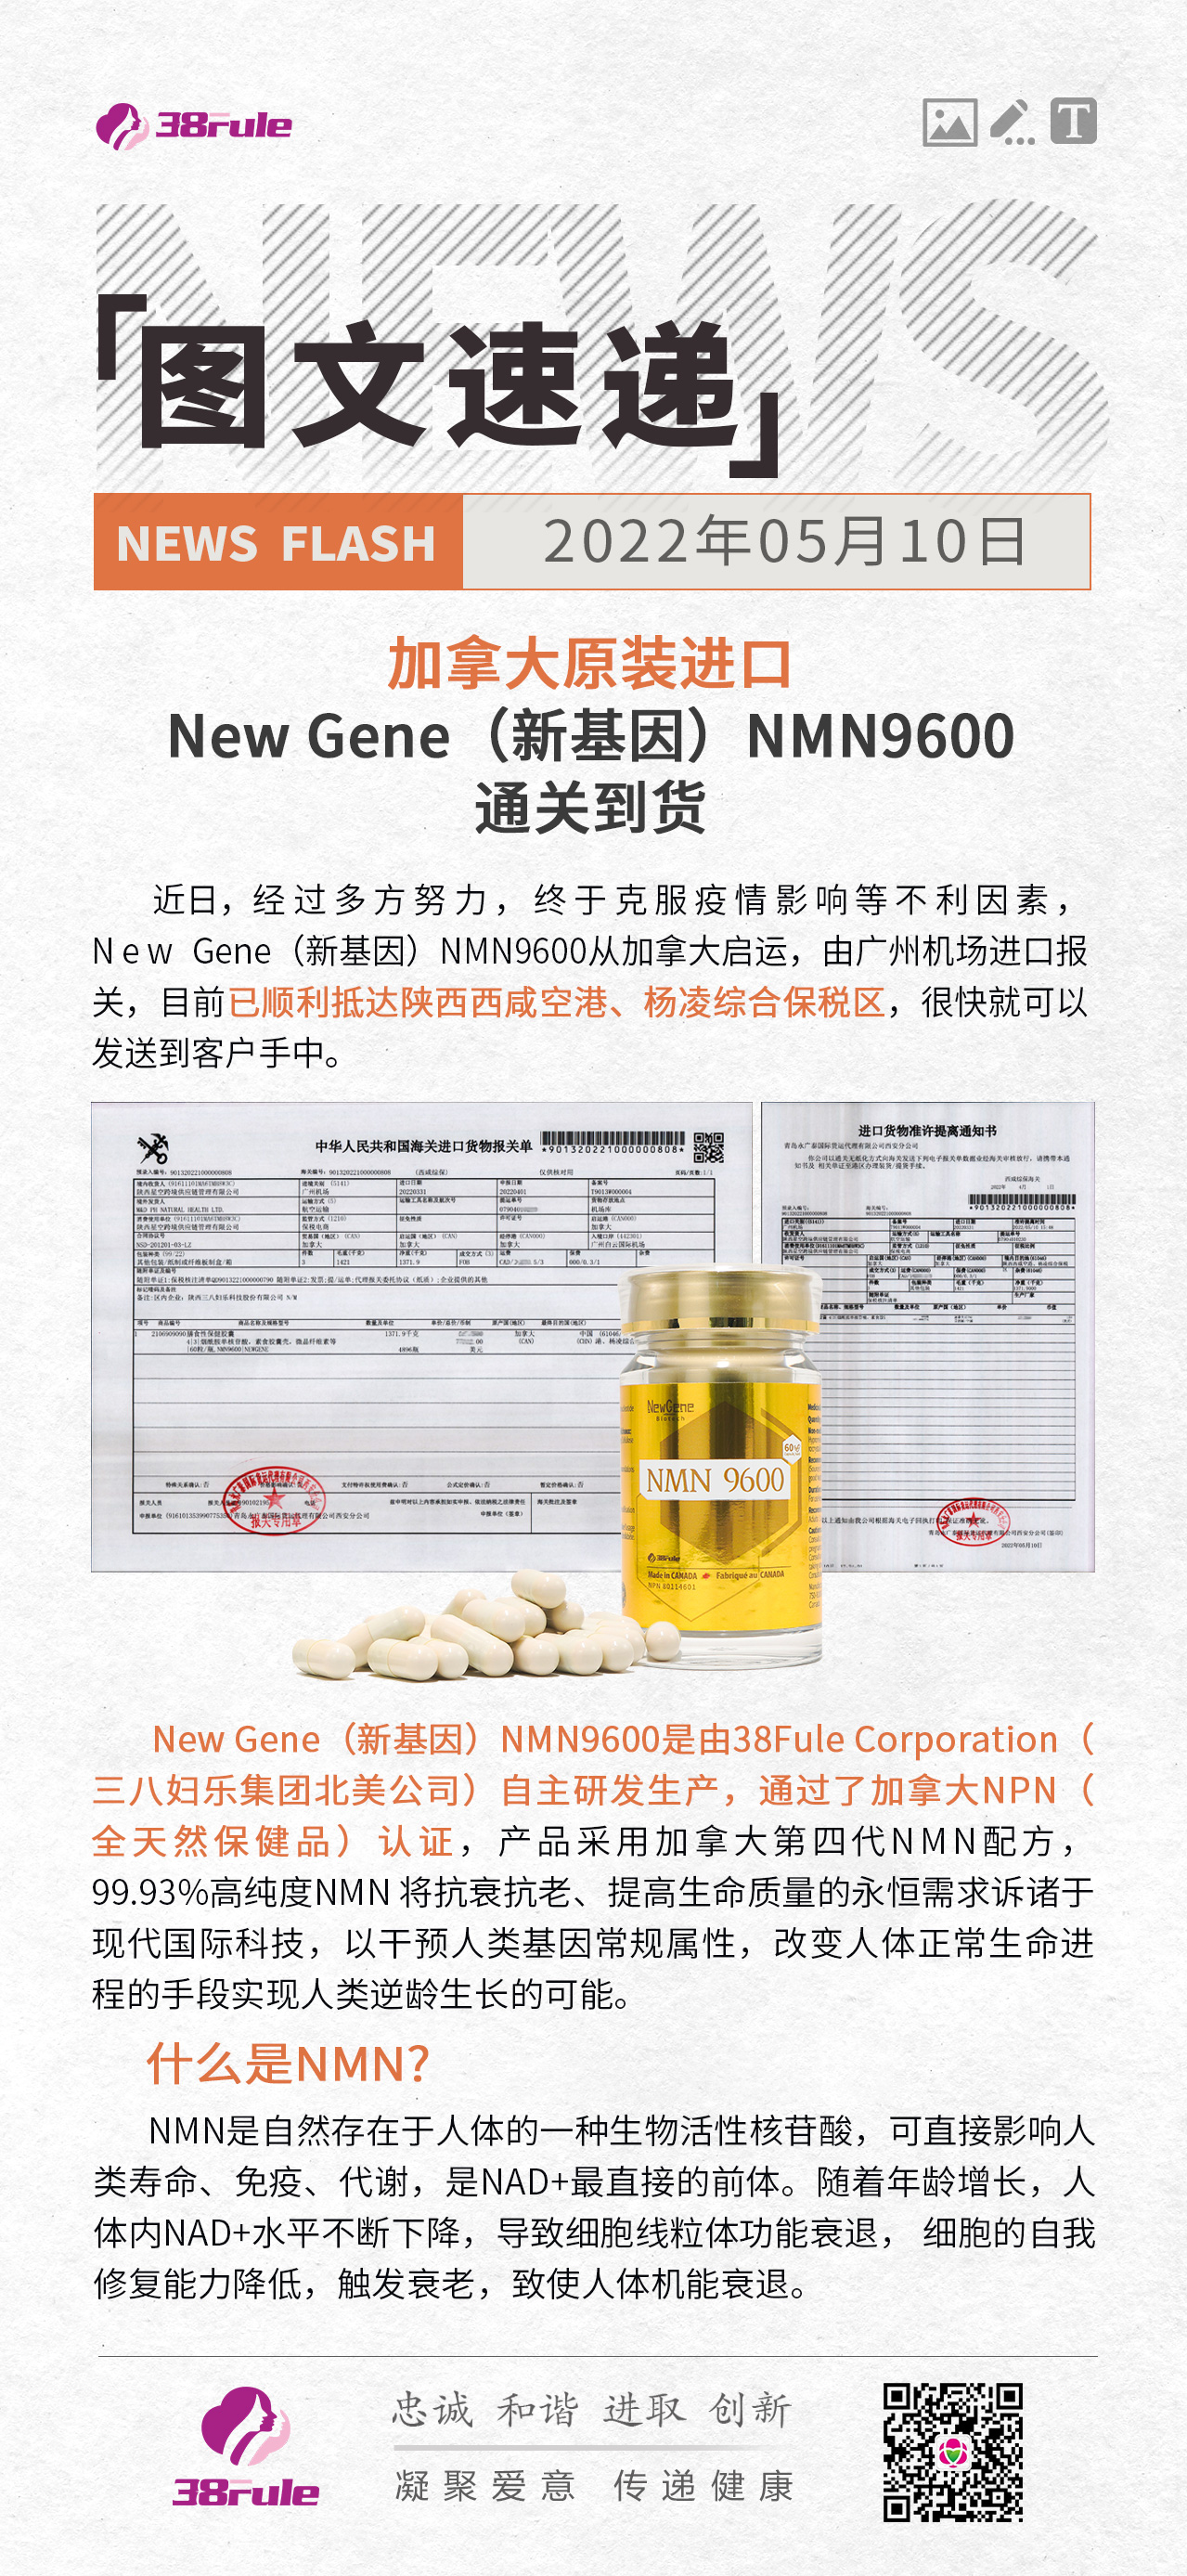 加拿大原装进口产品New Gene（新基因）NMN9600 通关到货